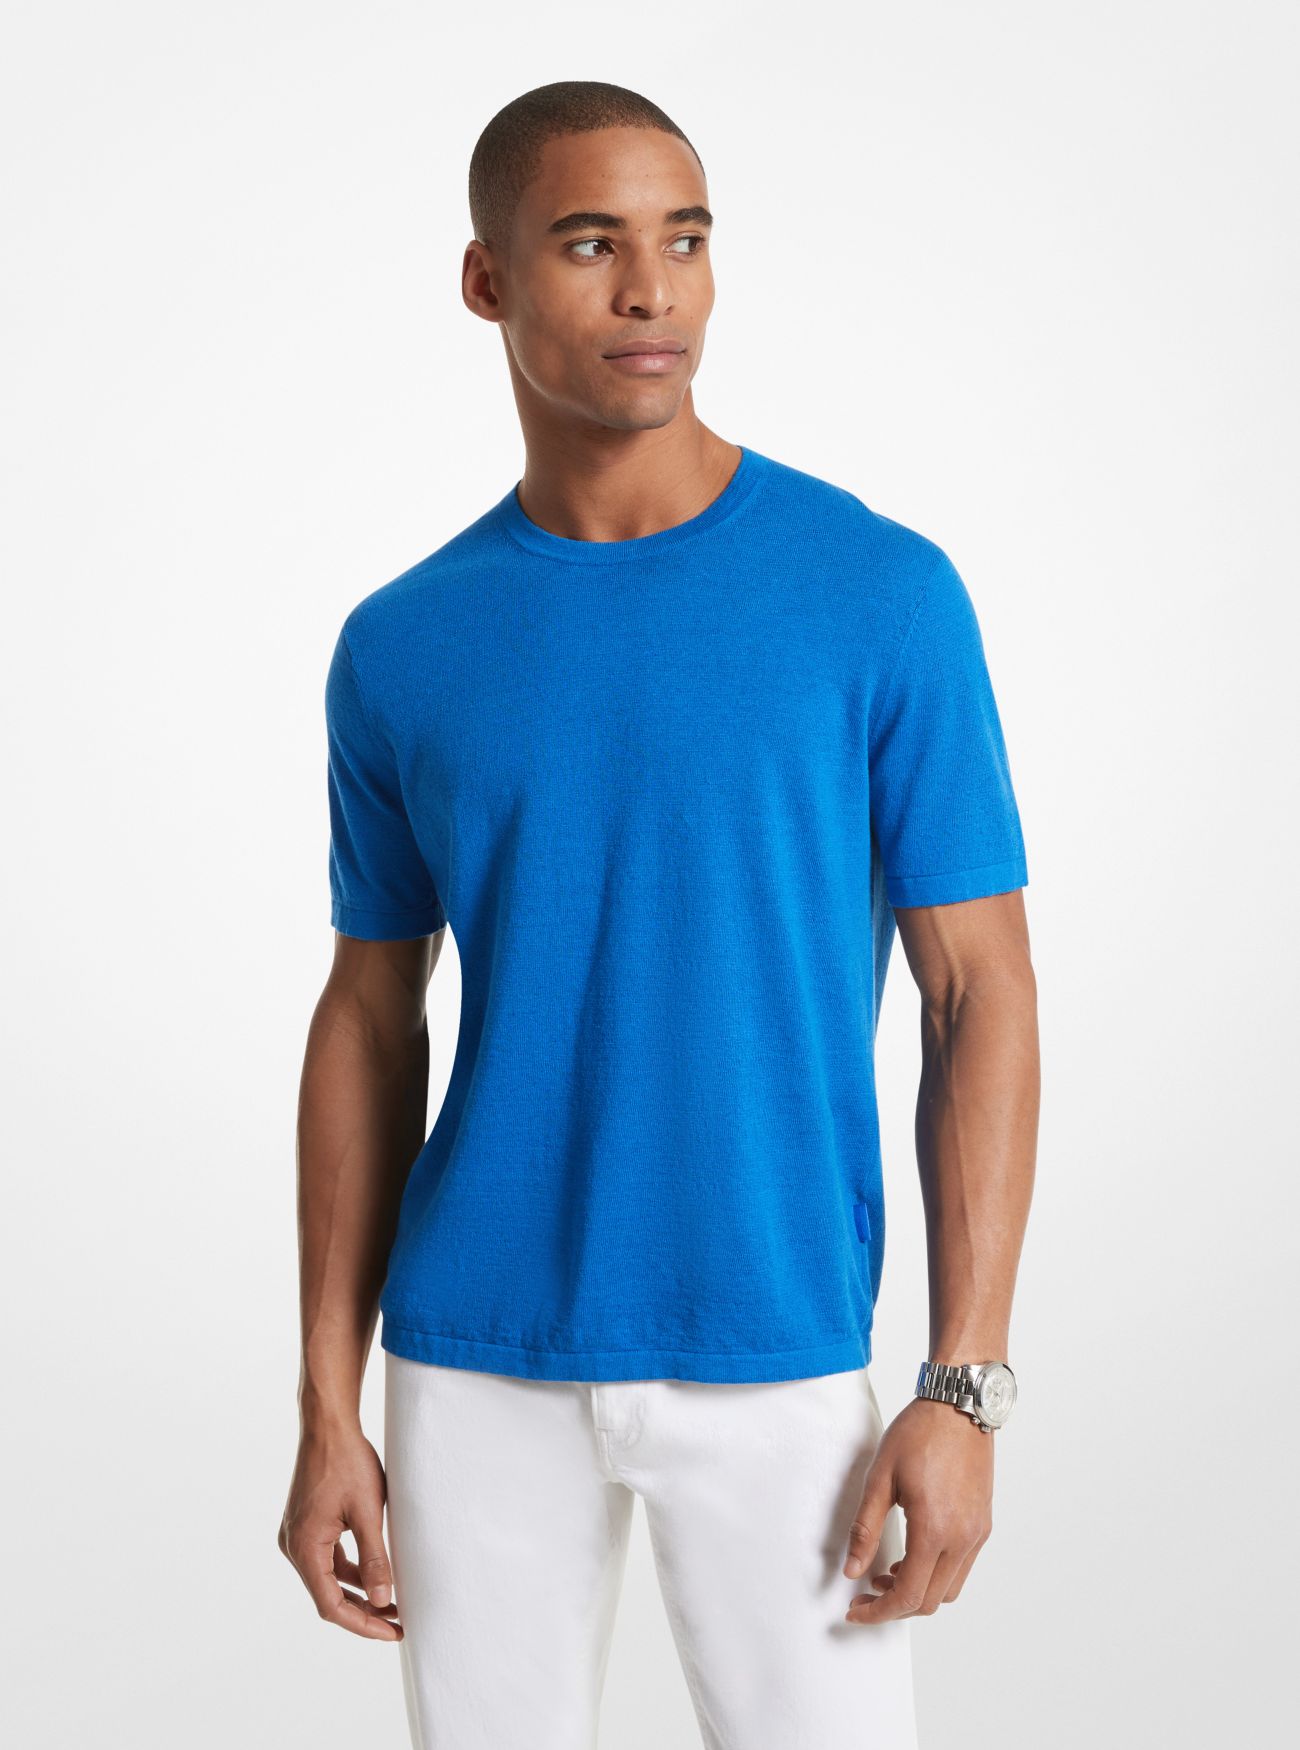 MK Linen Blend Shirt - Grecian Blue - Michael Kors